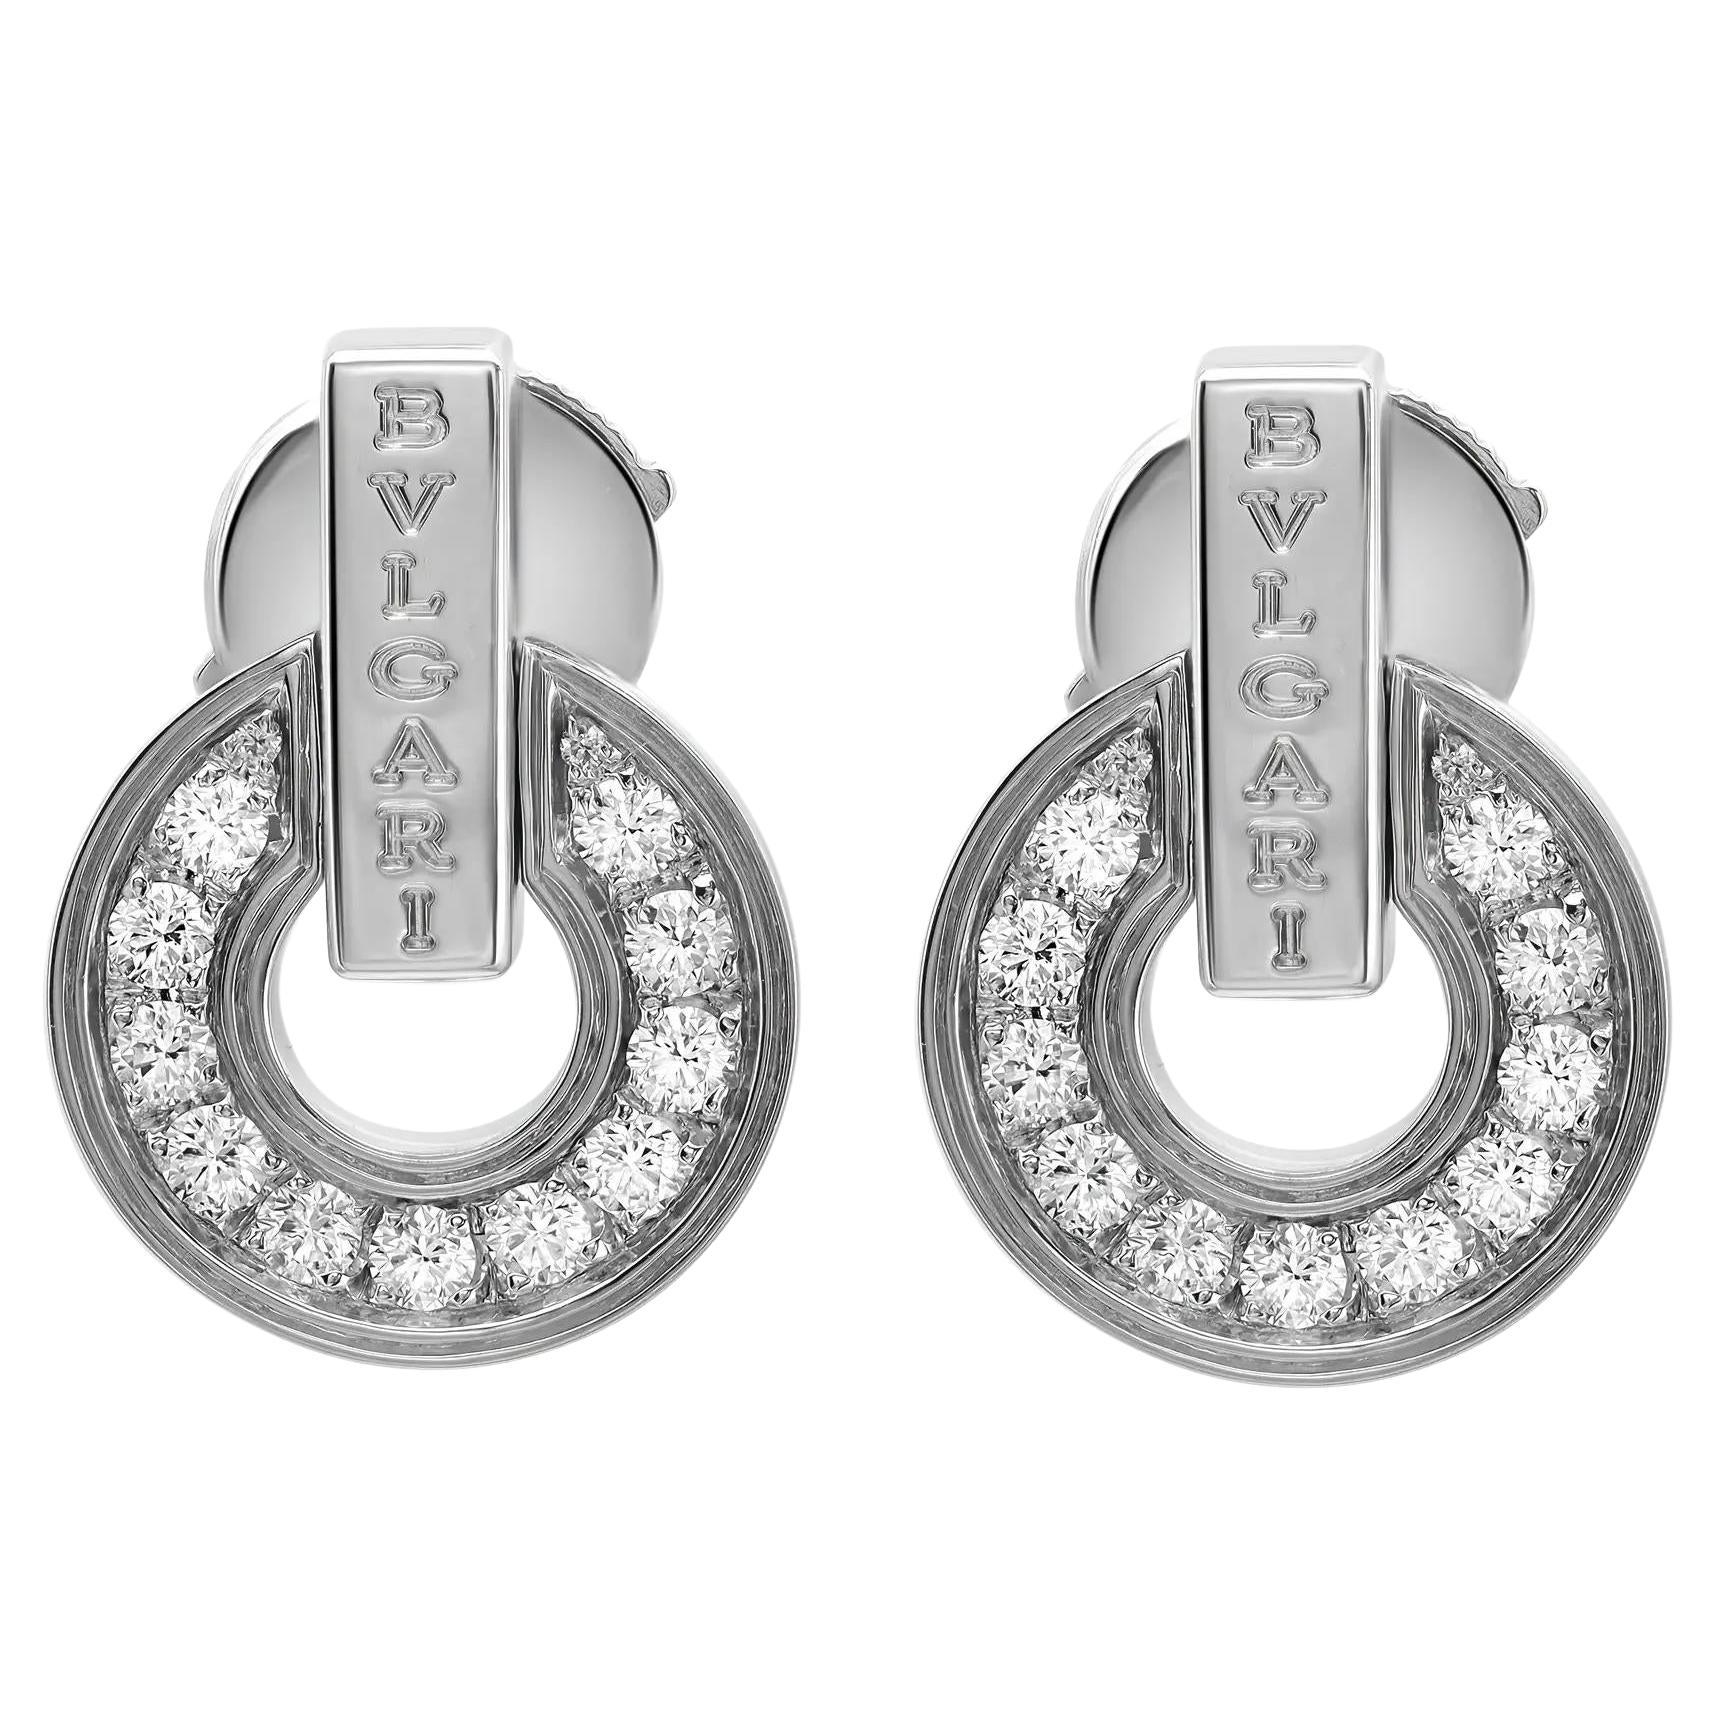 Bvlgari Bvlgari Diamond Openwork Earrings 18K White Gold For Sale